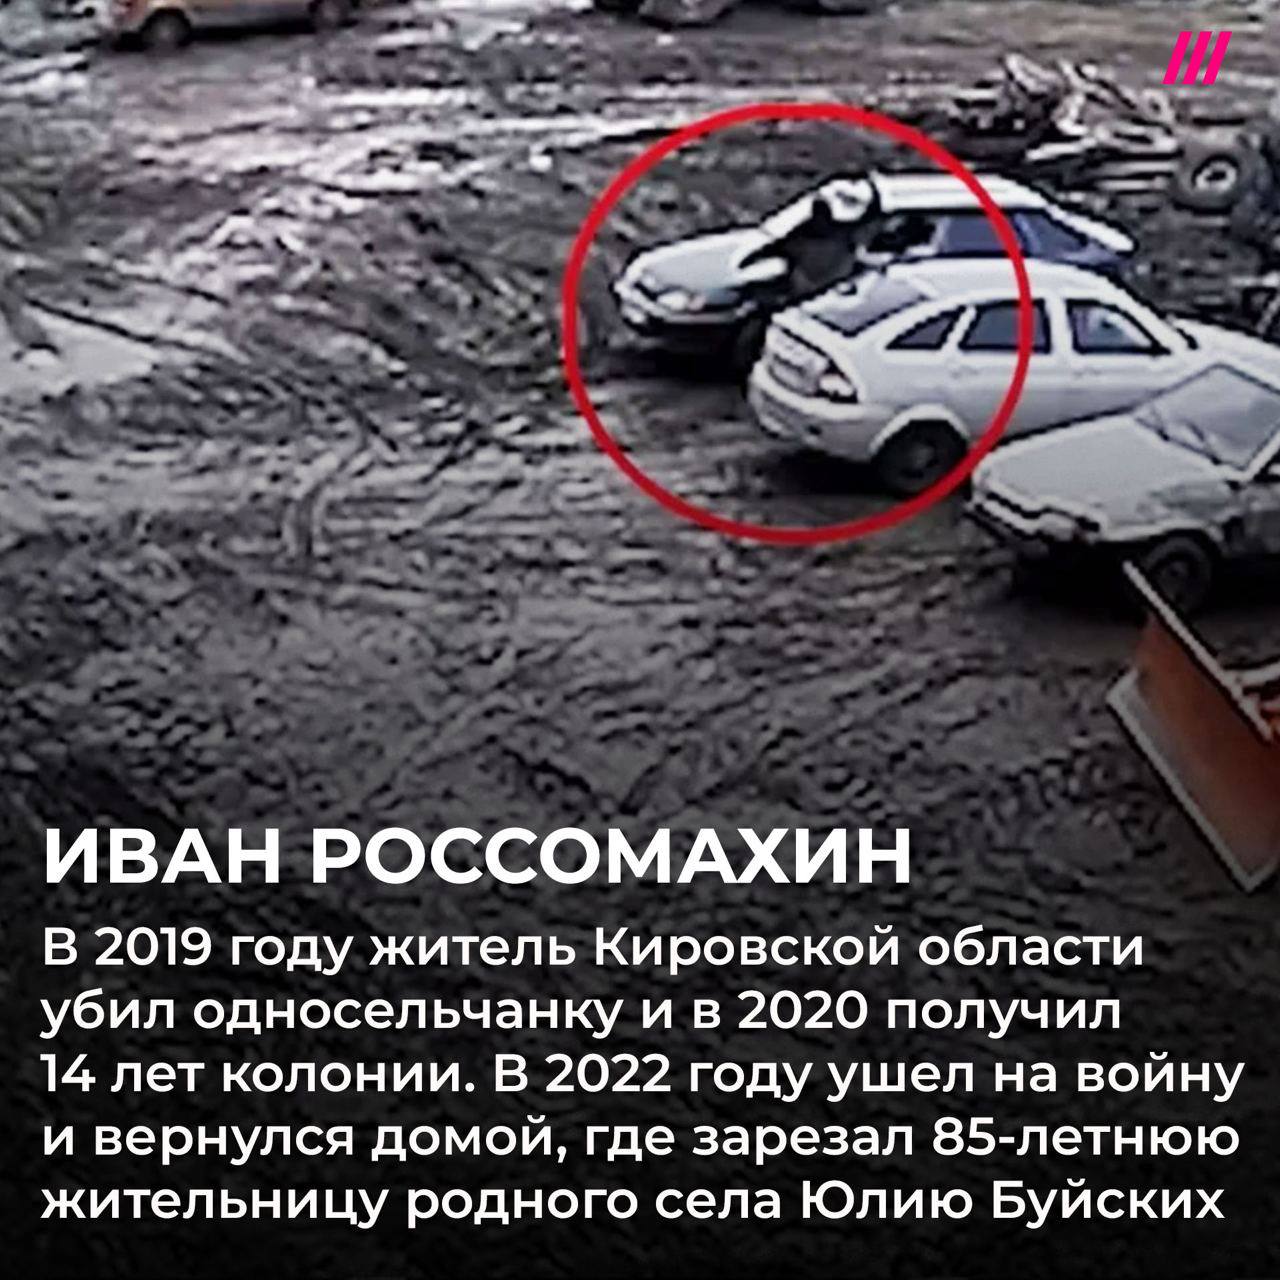 Путин за участие в войне помиловал 17 человек, которые совершили громкие убийства — фото